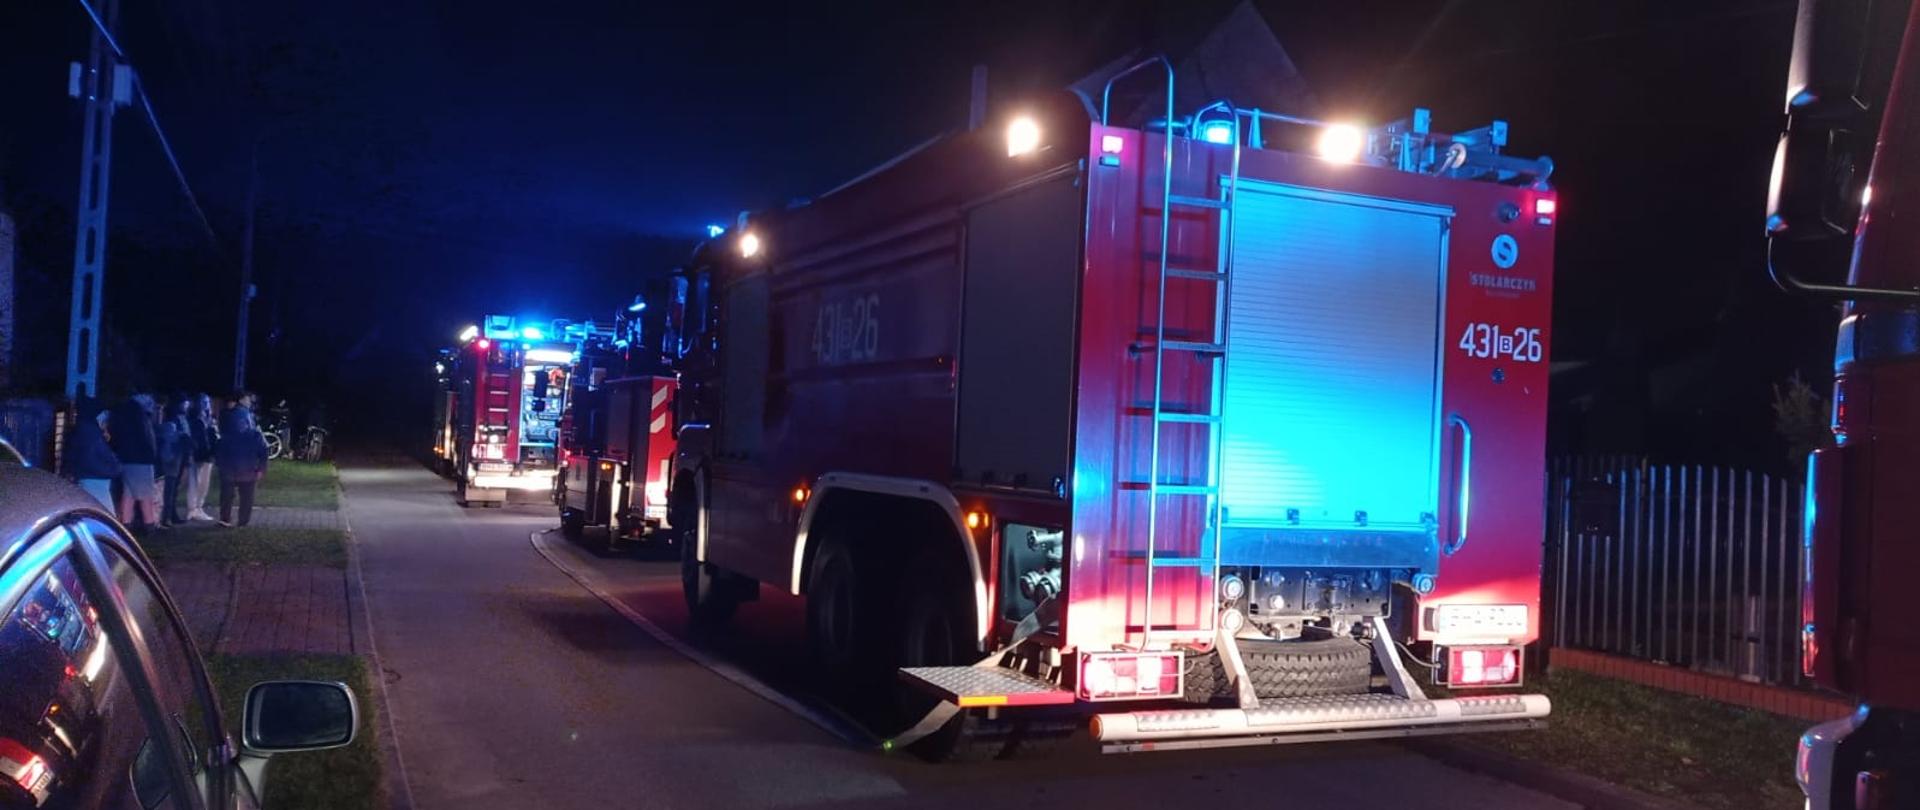 W nocy na drodze pomiędzy zabudowaniami stoją trzy samochody pożarnicze z włączonymi sygnałami świetlnymi.